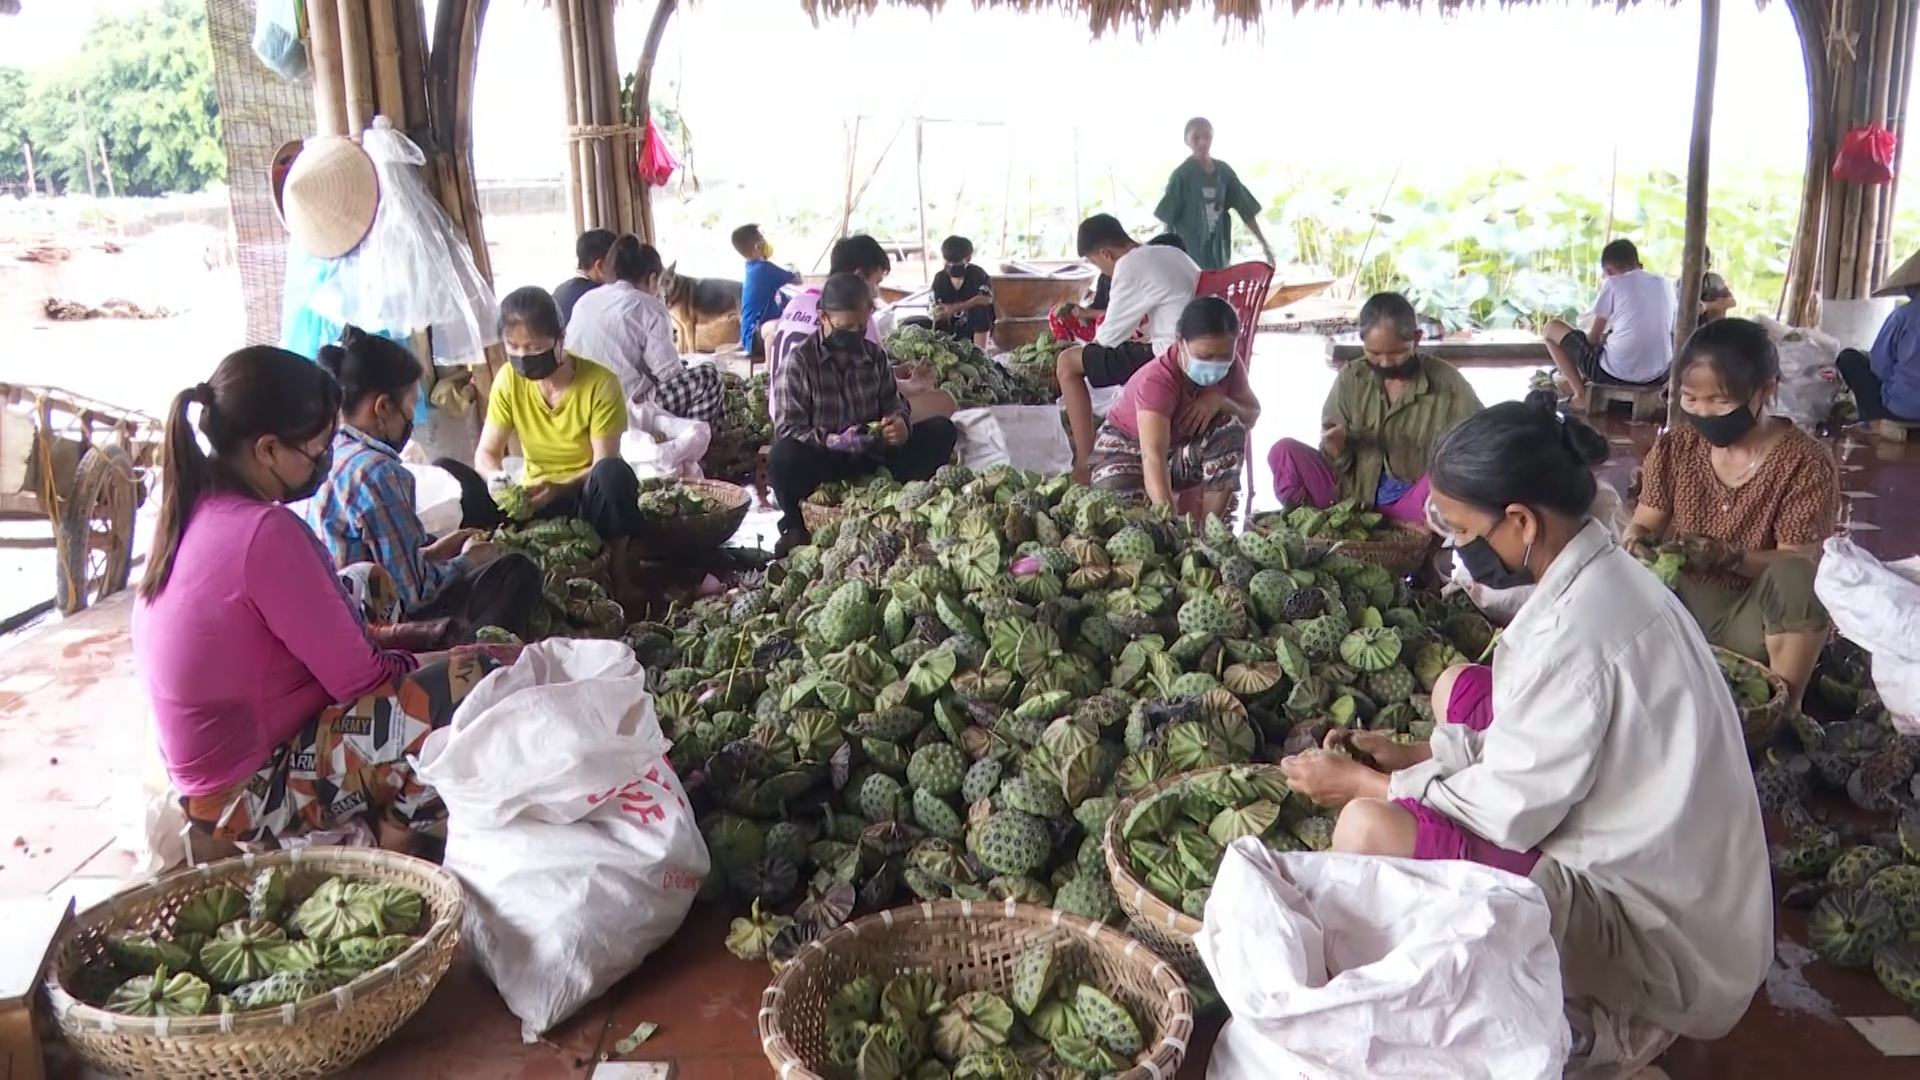 Phong trào nông dân thi đua sản xuất kinh doanh giỏi ở huyện Tam Nông giúp hàng trăm hộ thoát nghèo - Ảnh 3.